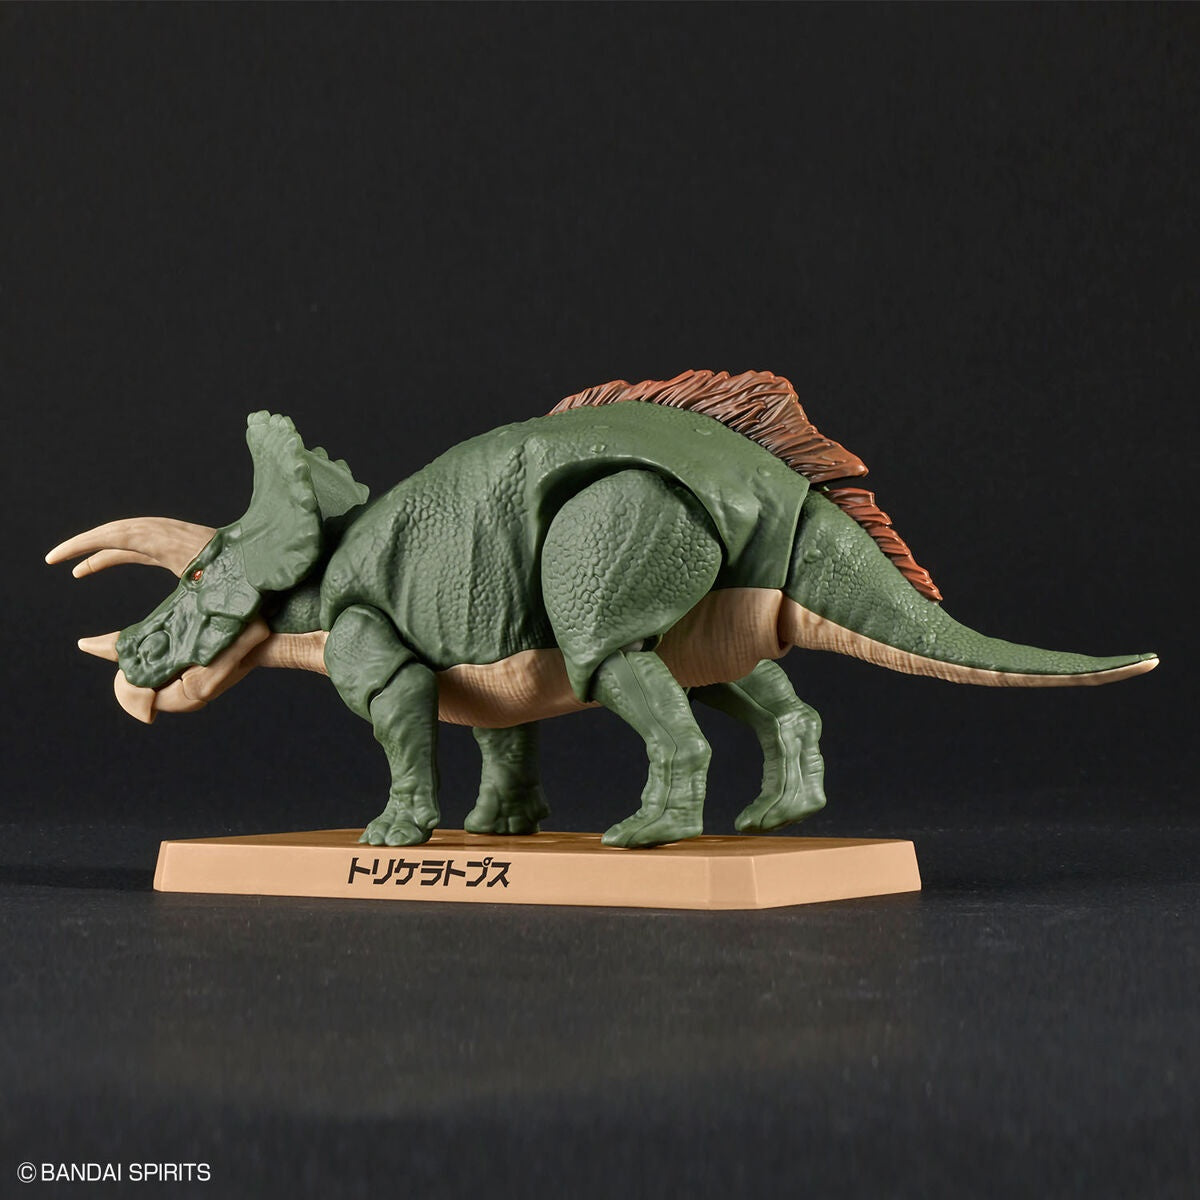 Plannosaurus - Triceratops